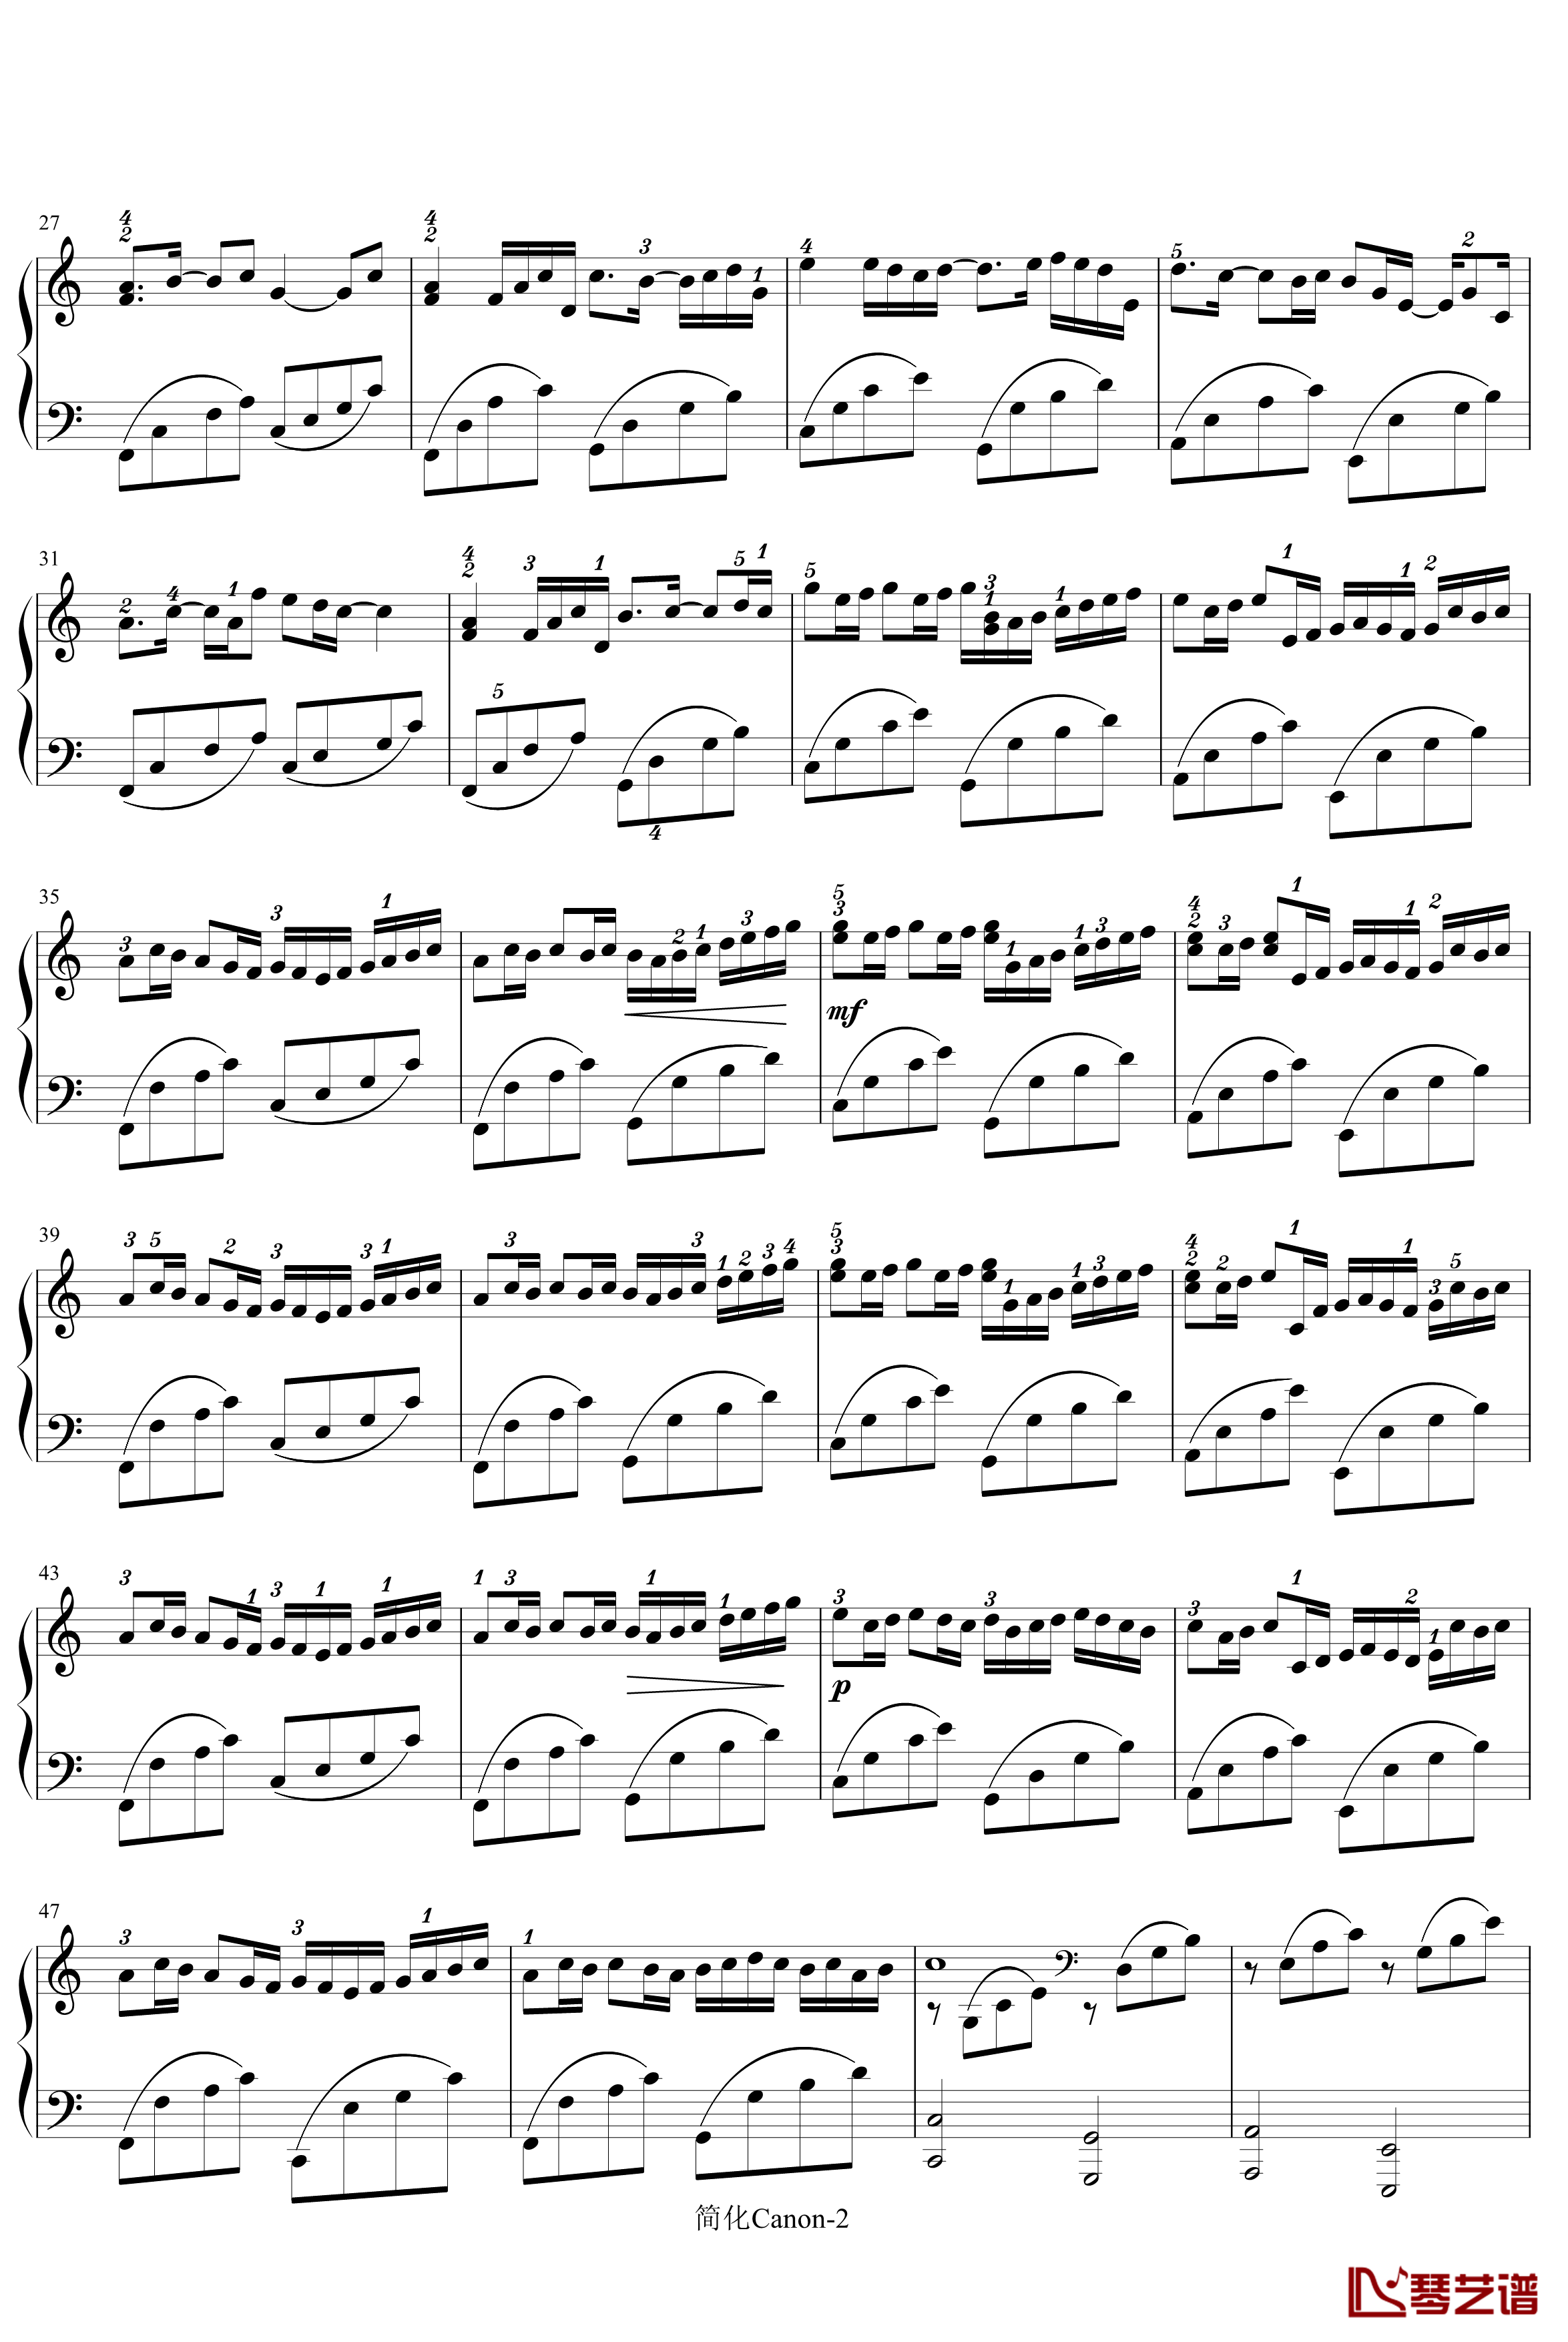 卡农-寒风钢琴谱-简化版-帕赫贝尔-Pachelbel2